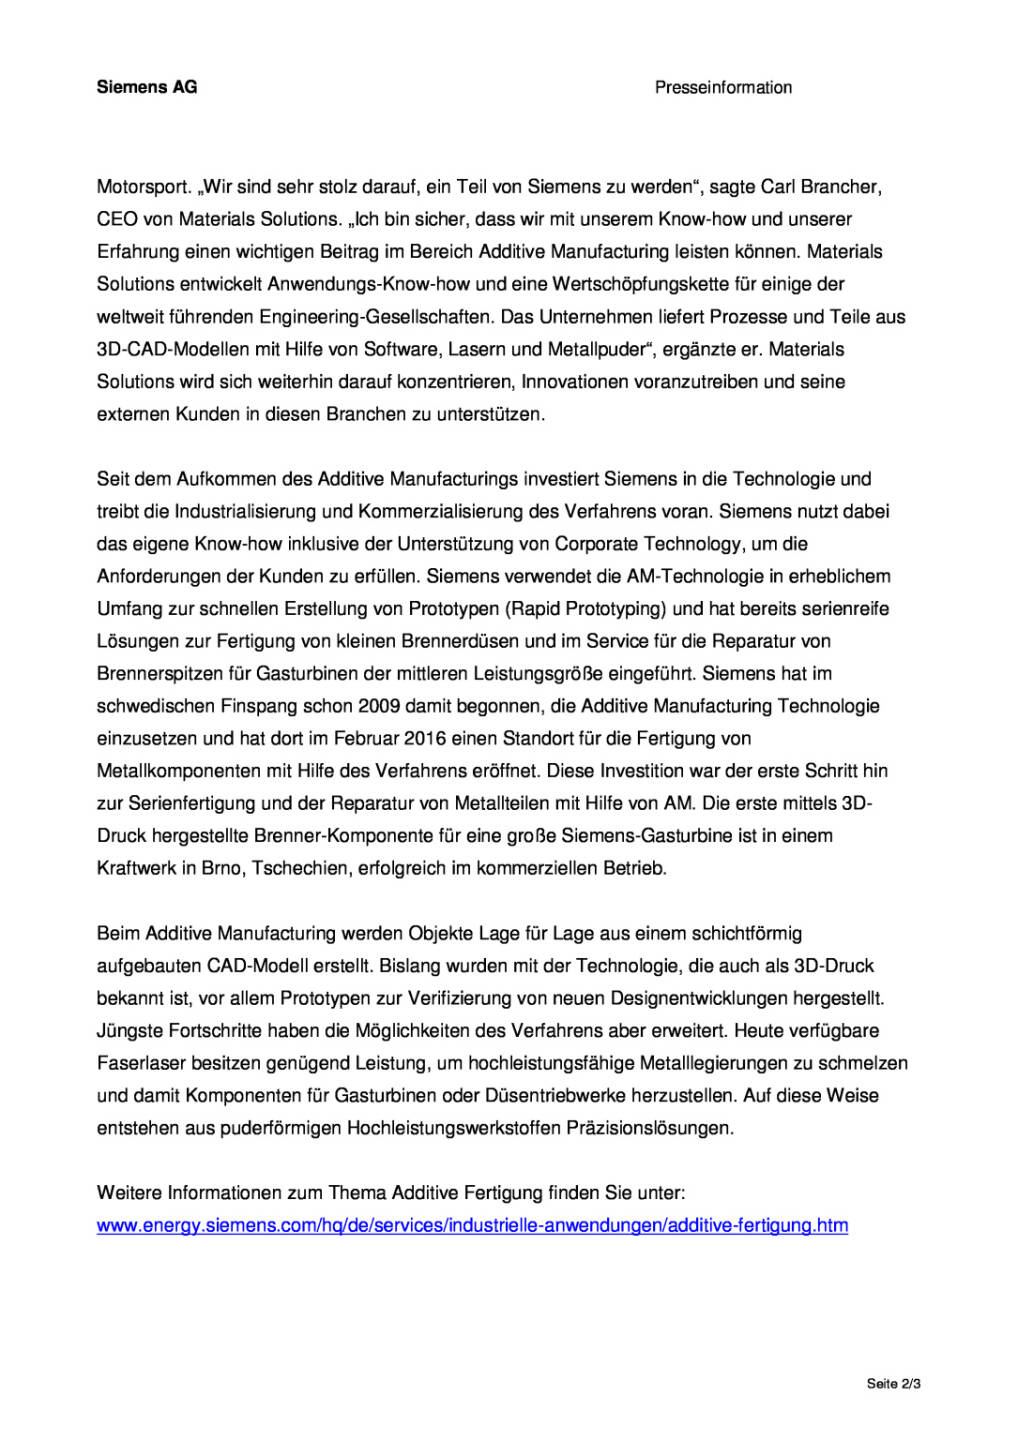 Siemens stärkt Position im Bereich Additive Manufacturing, Seite 2/3, komplettes Dokument unter http://boerse-social.com/static/uploads/file_1555_siemens_starkt_position_im_bereich_additive_manufacturing.pdf